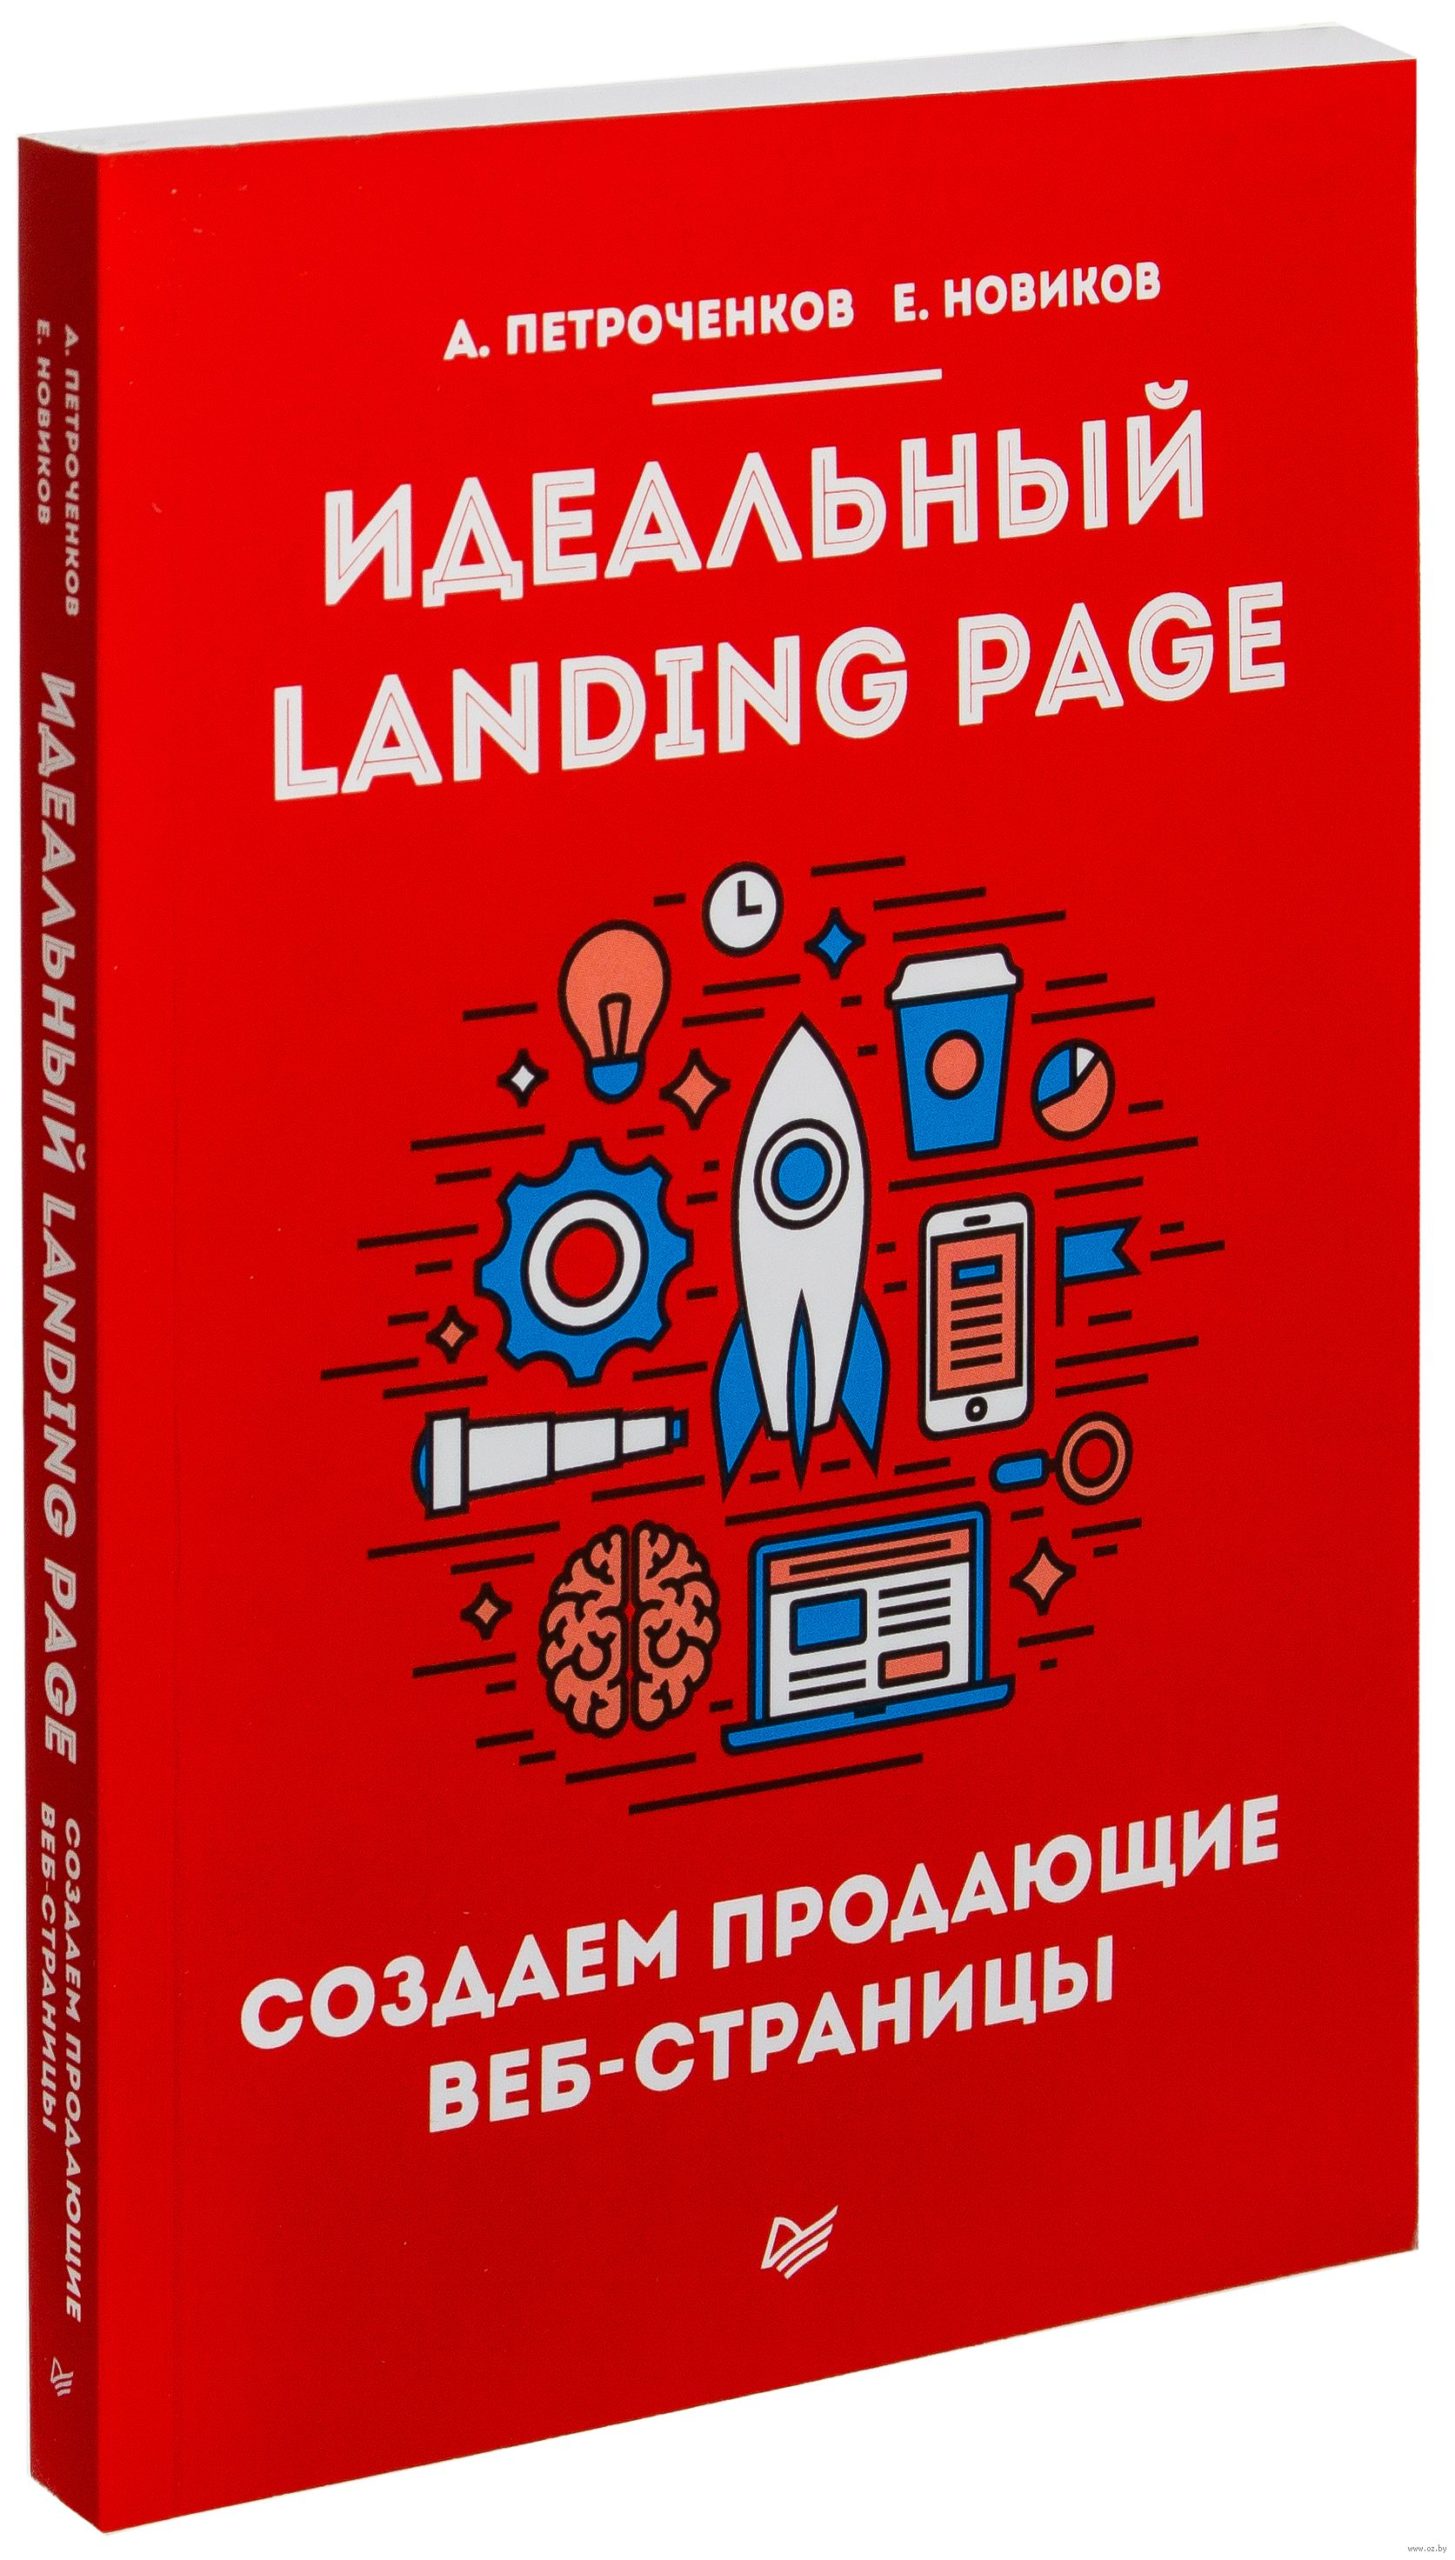 «Идеальный Landing Page. Создаем продающие веб-страницы»